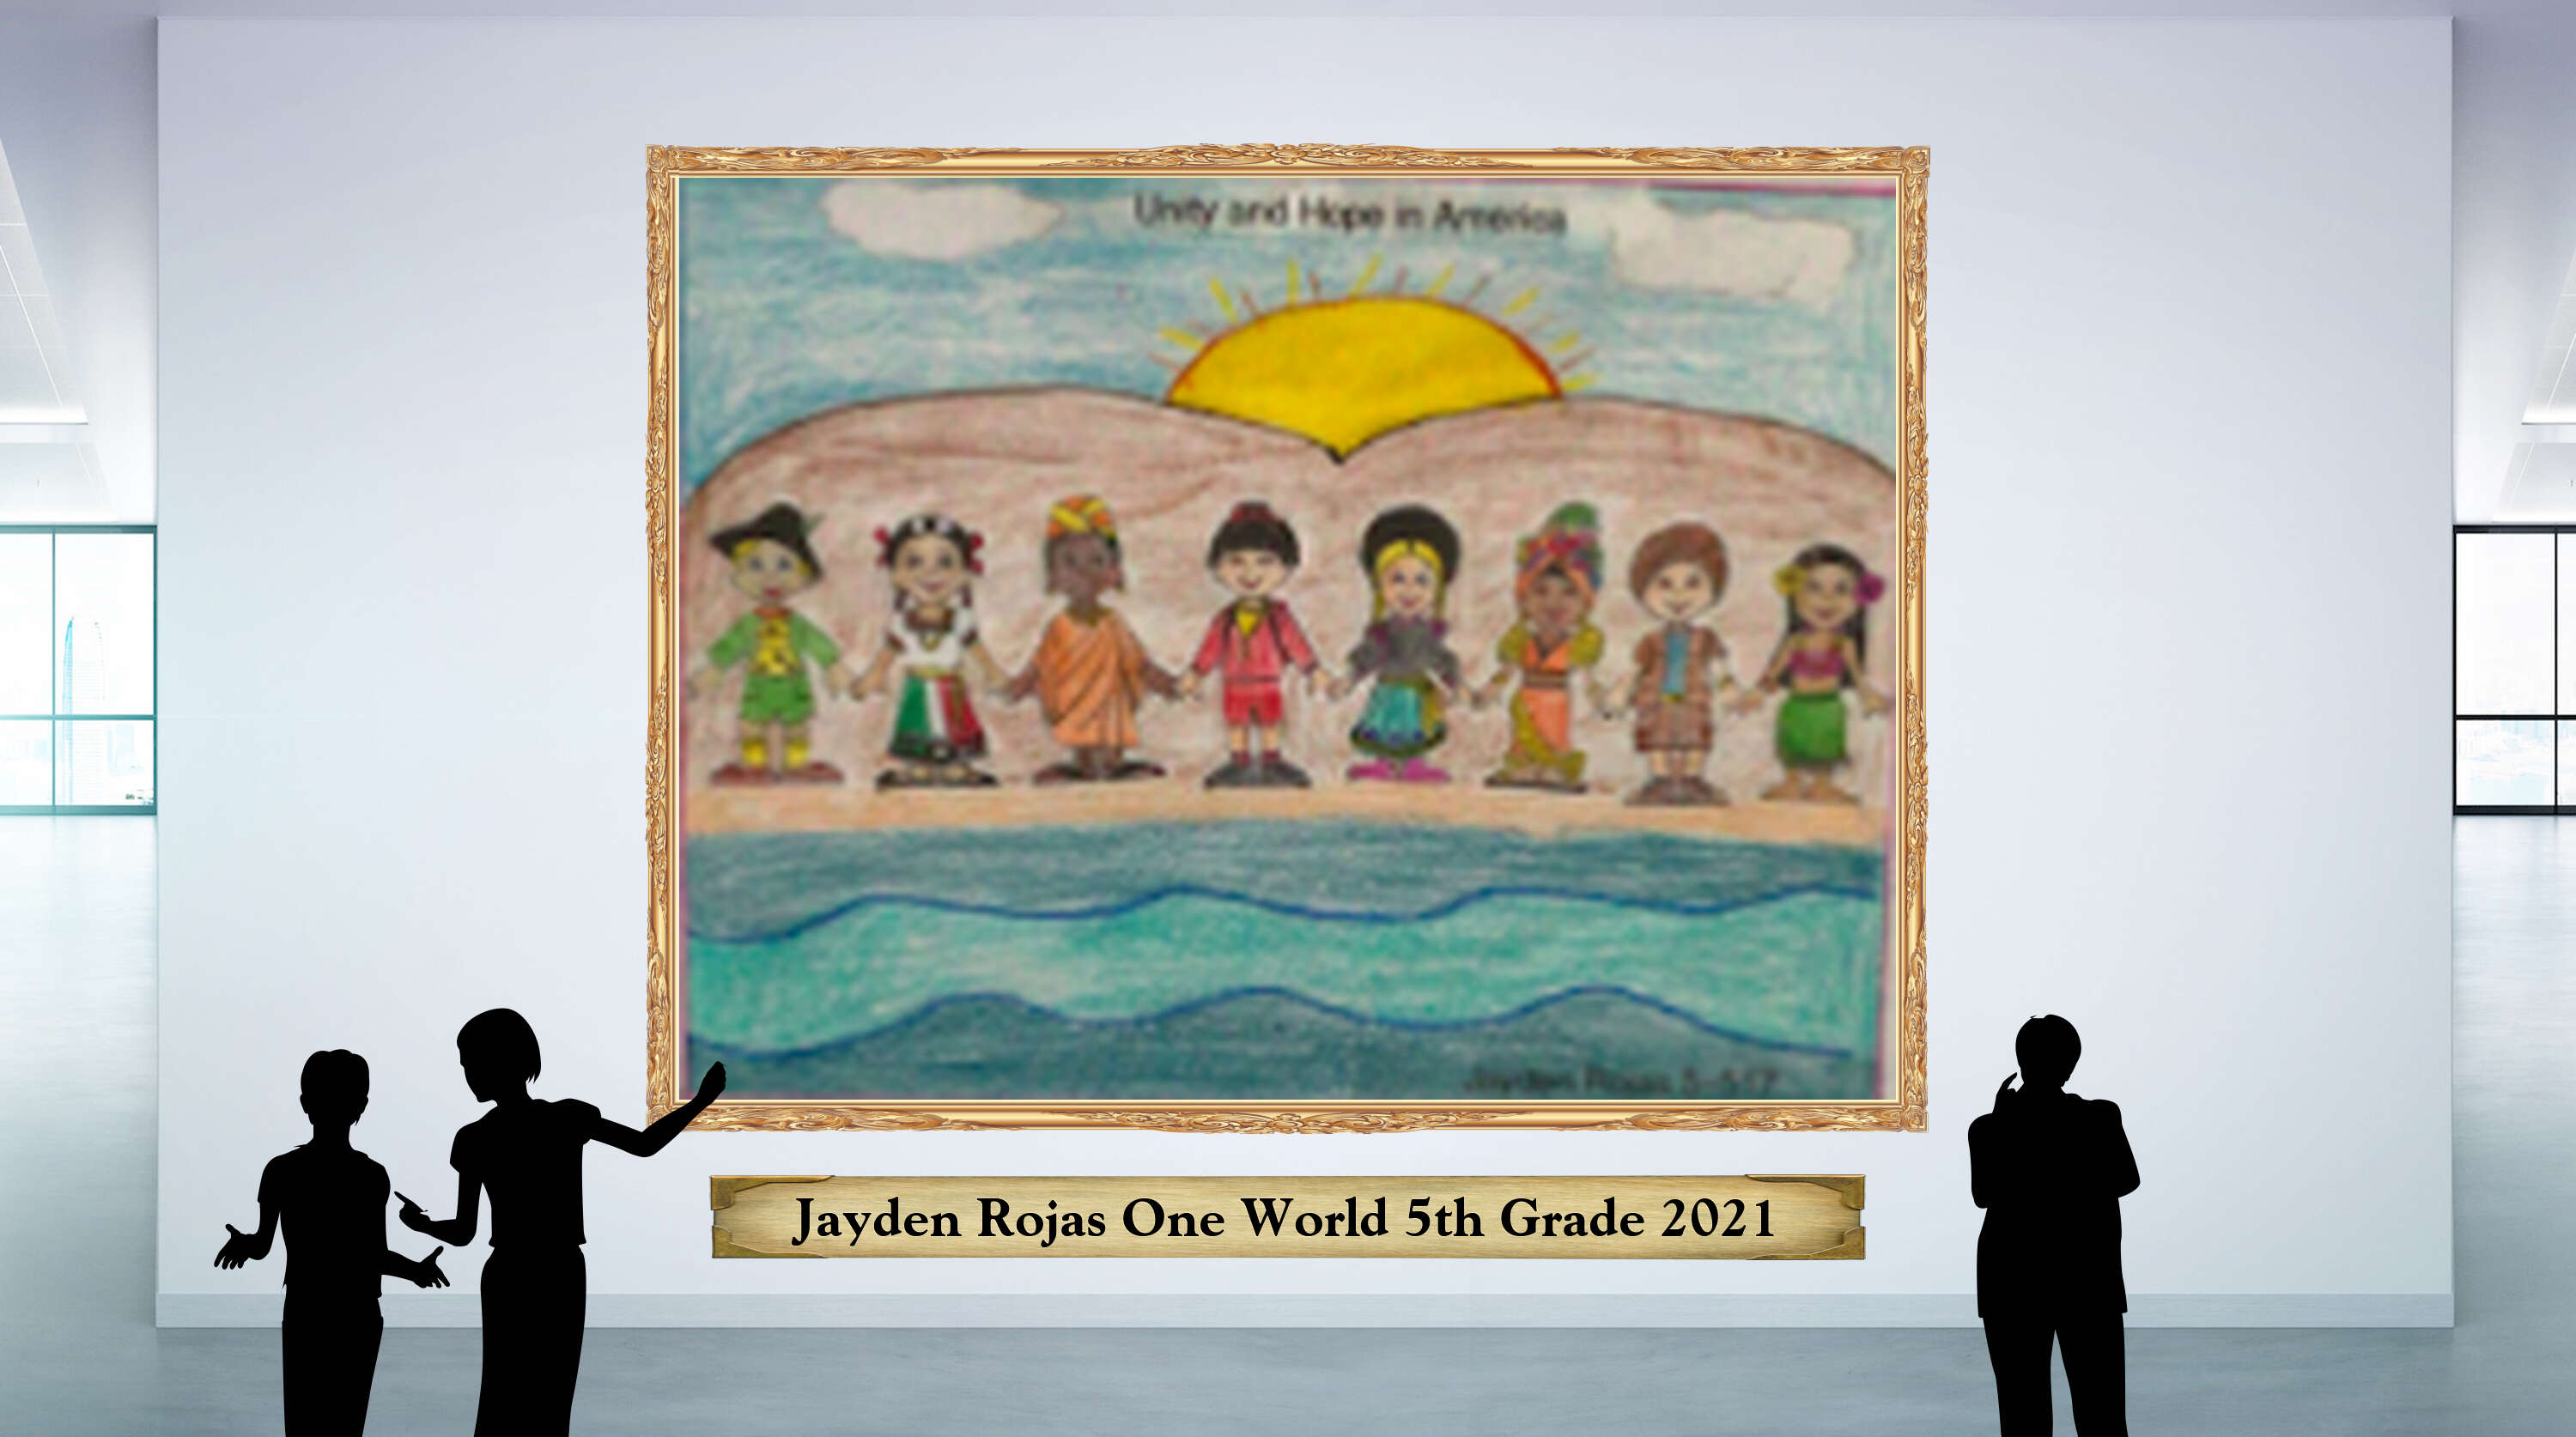 Jayden Rojas One World 5th Grade 2021